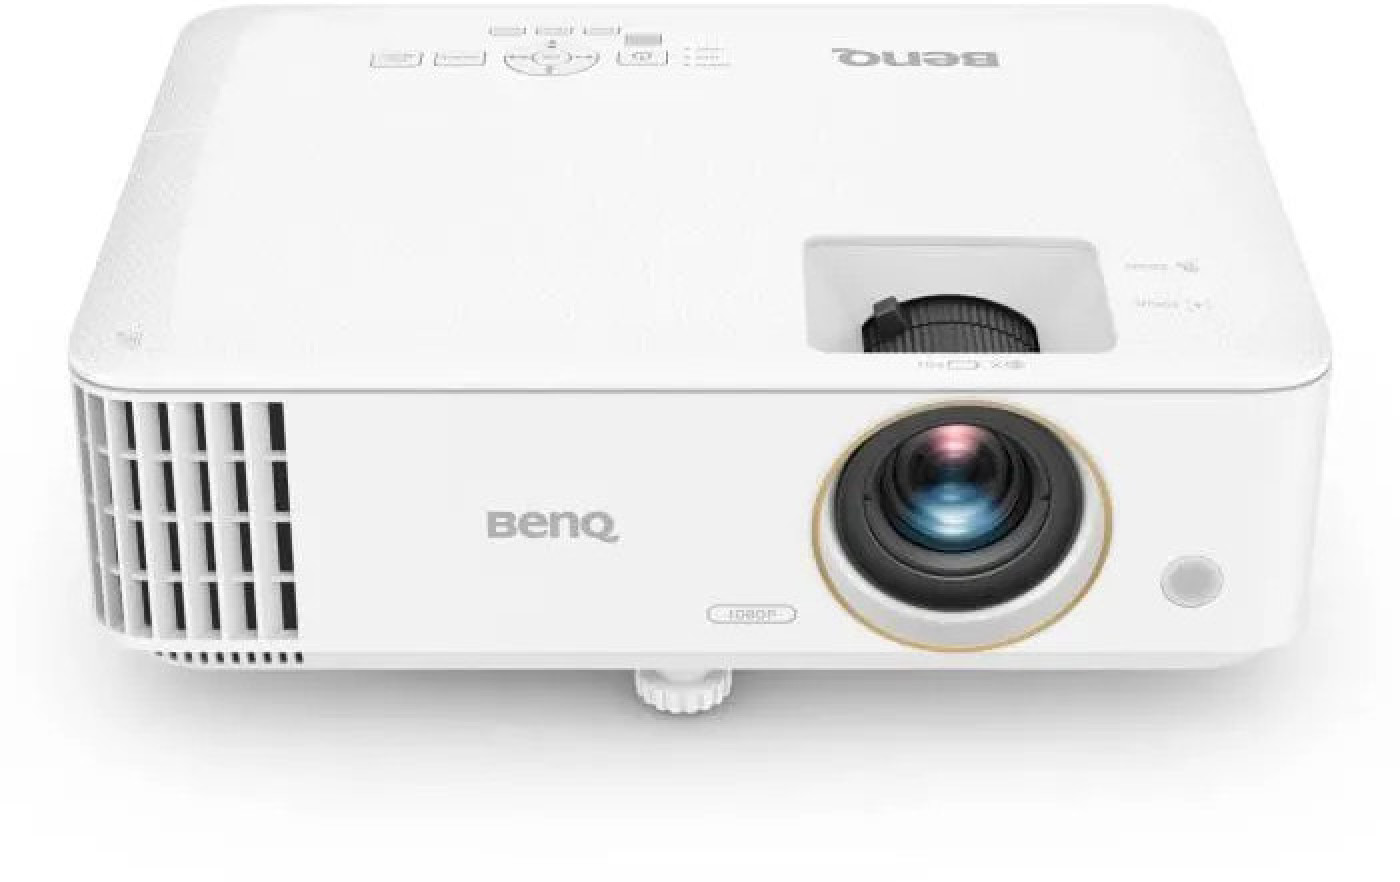 BENQ TH585p - Full HD (1920 x 1080) DLP-Videoprojektor - 3500 ANSI-Lumen - HDMI, USB - 10-W-Lautsprecher - Wei